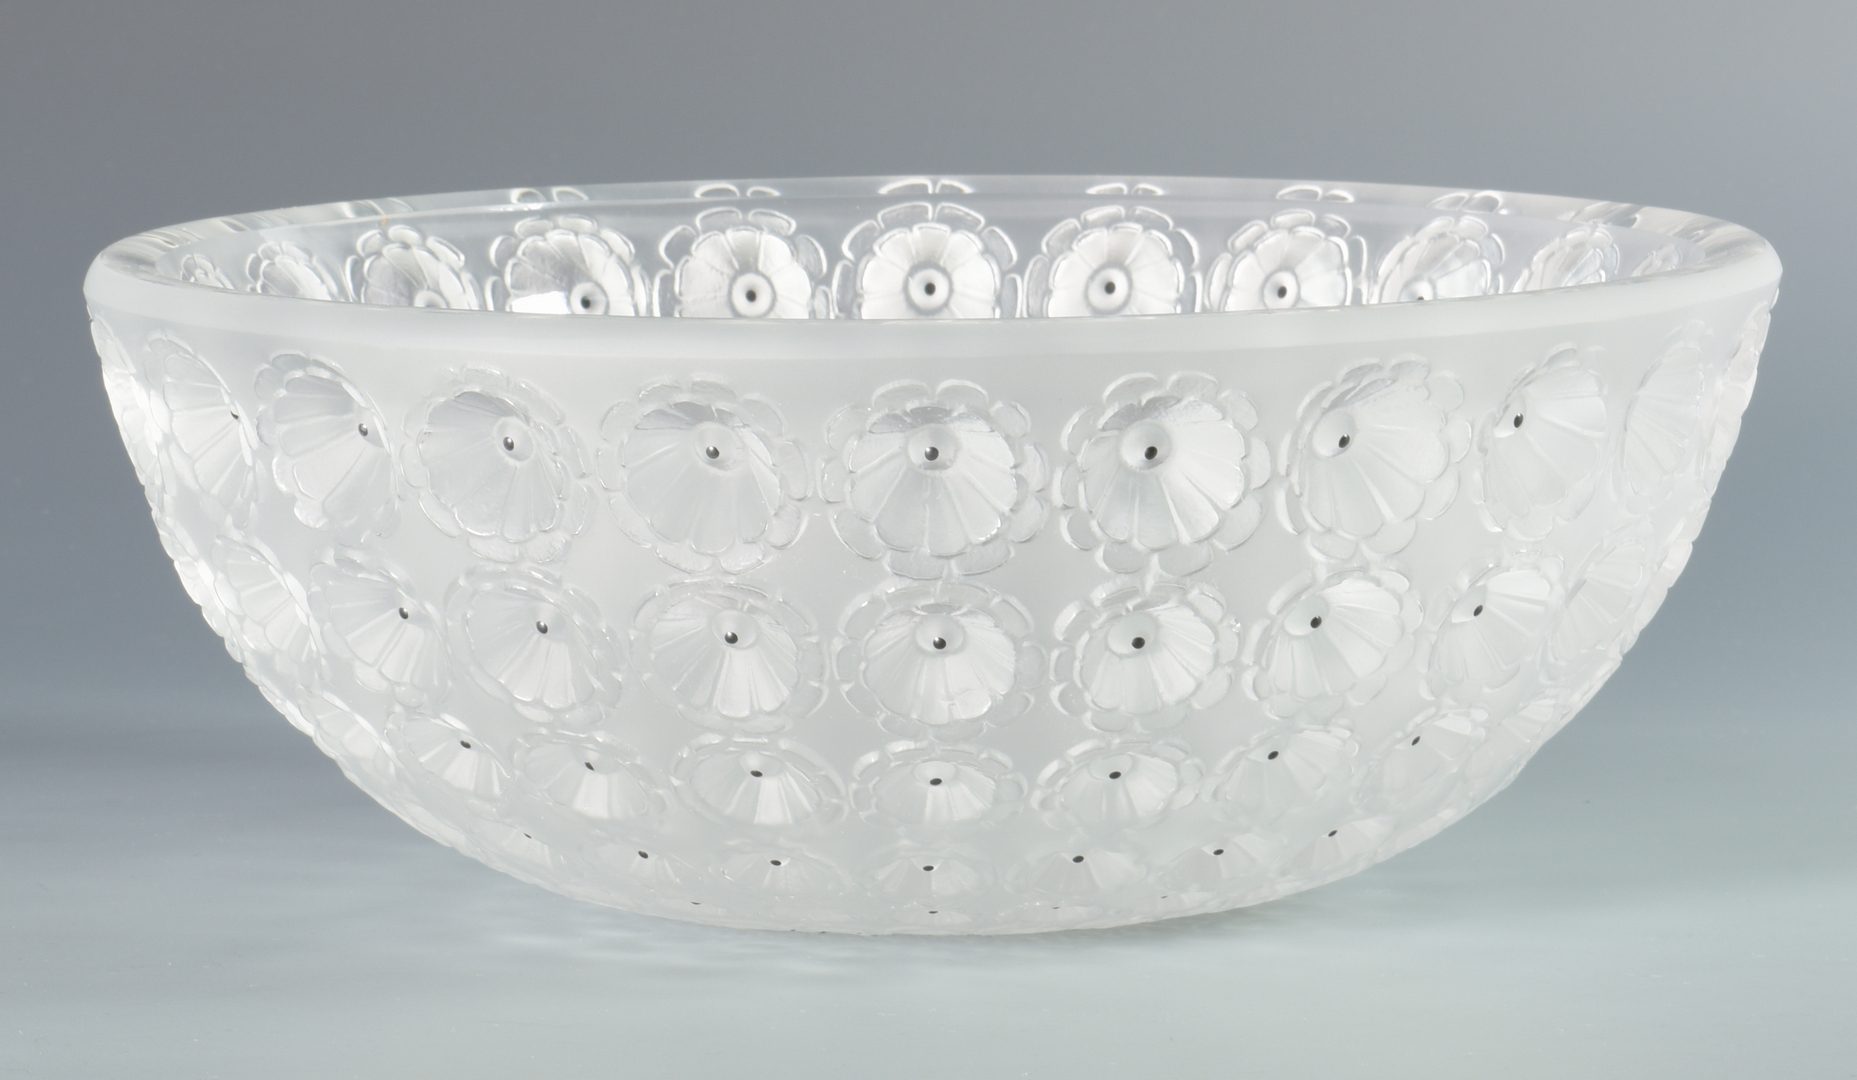 Lot 900: Rene Lalique Nemours Coupe Glass Bowl